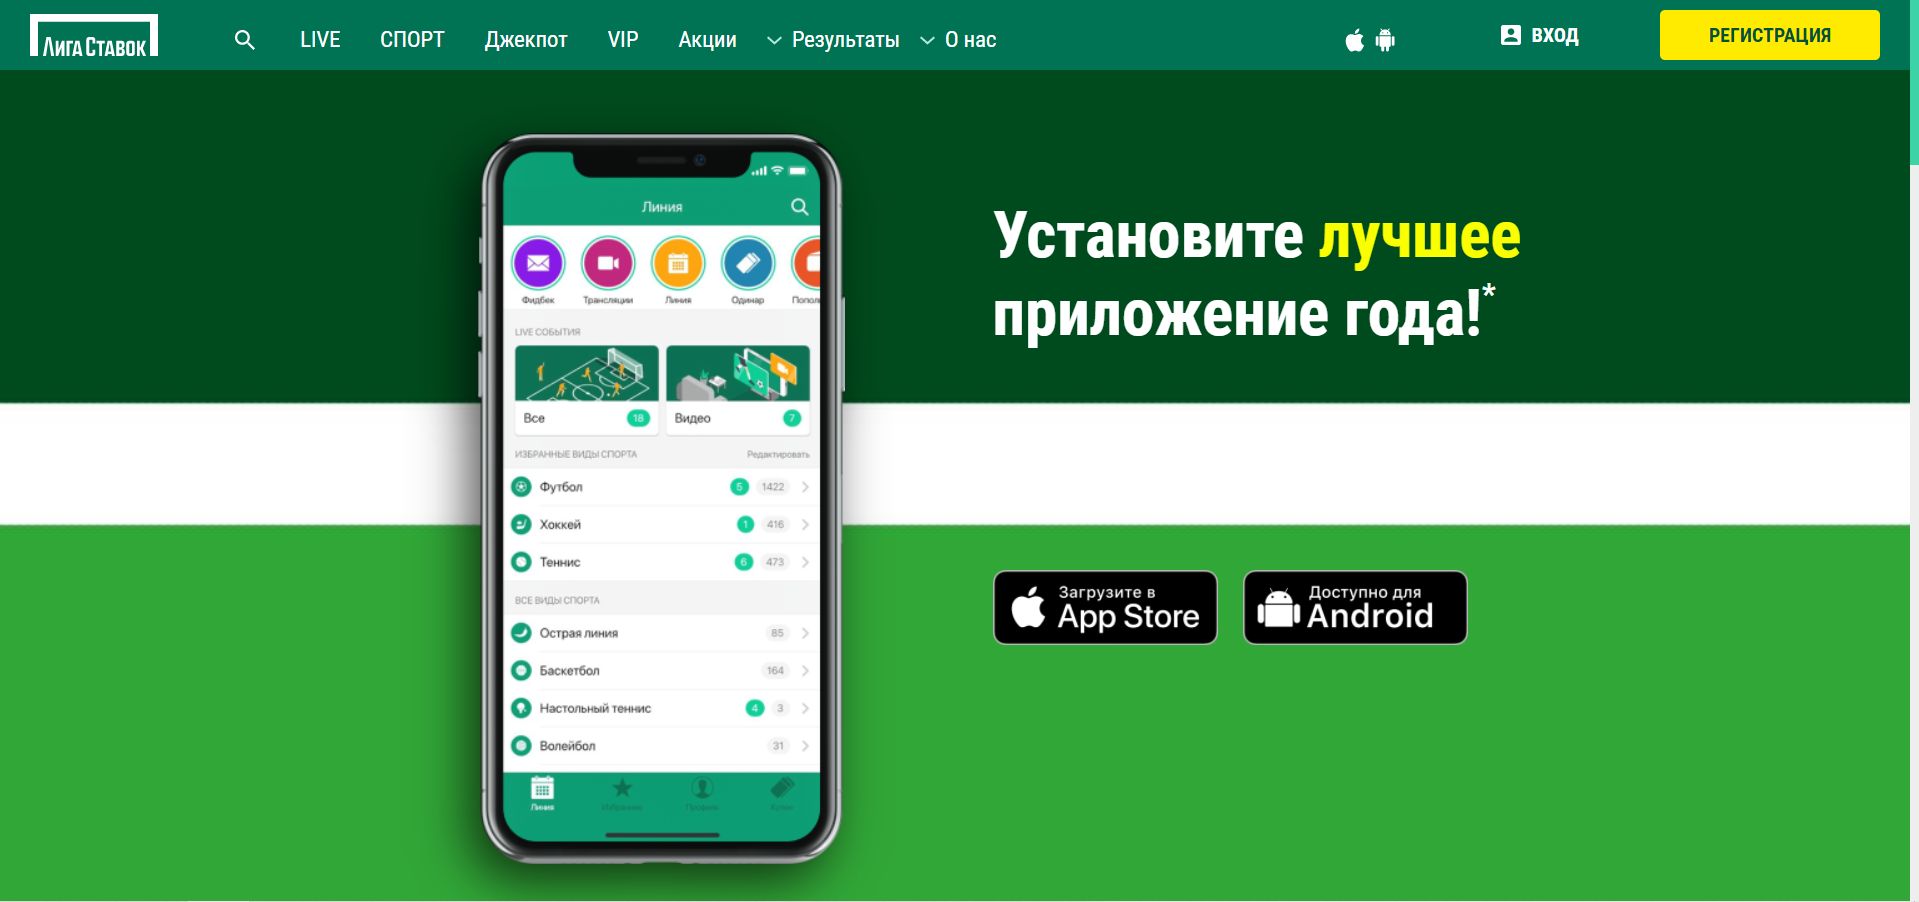 Лига ставок приложения для андроид покер на рубли онлайн с выводом денег